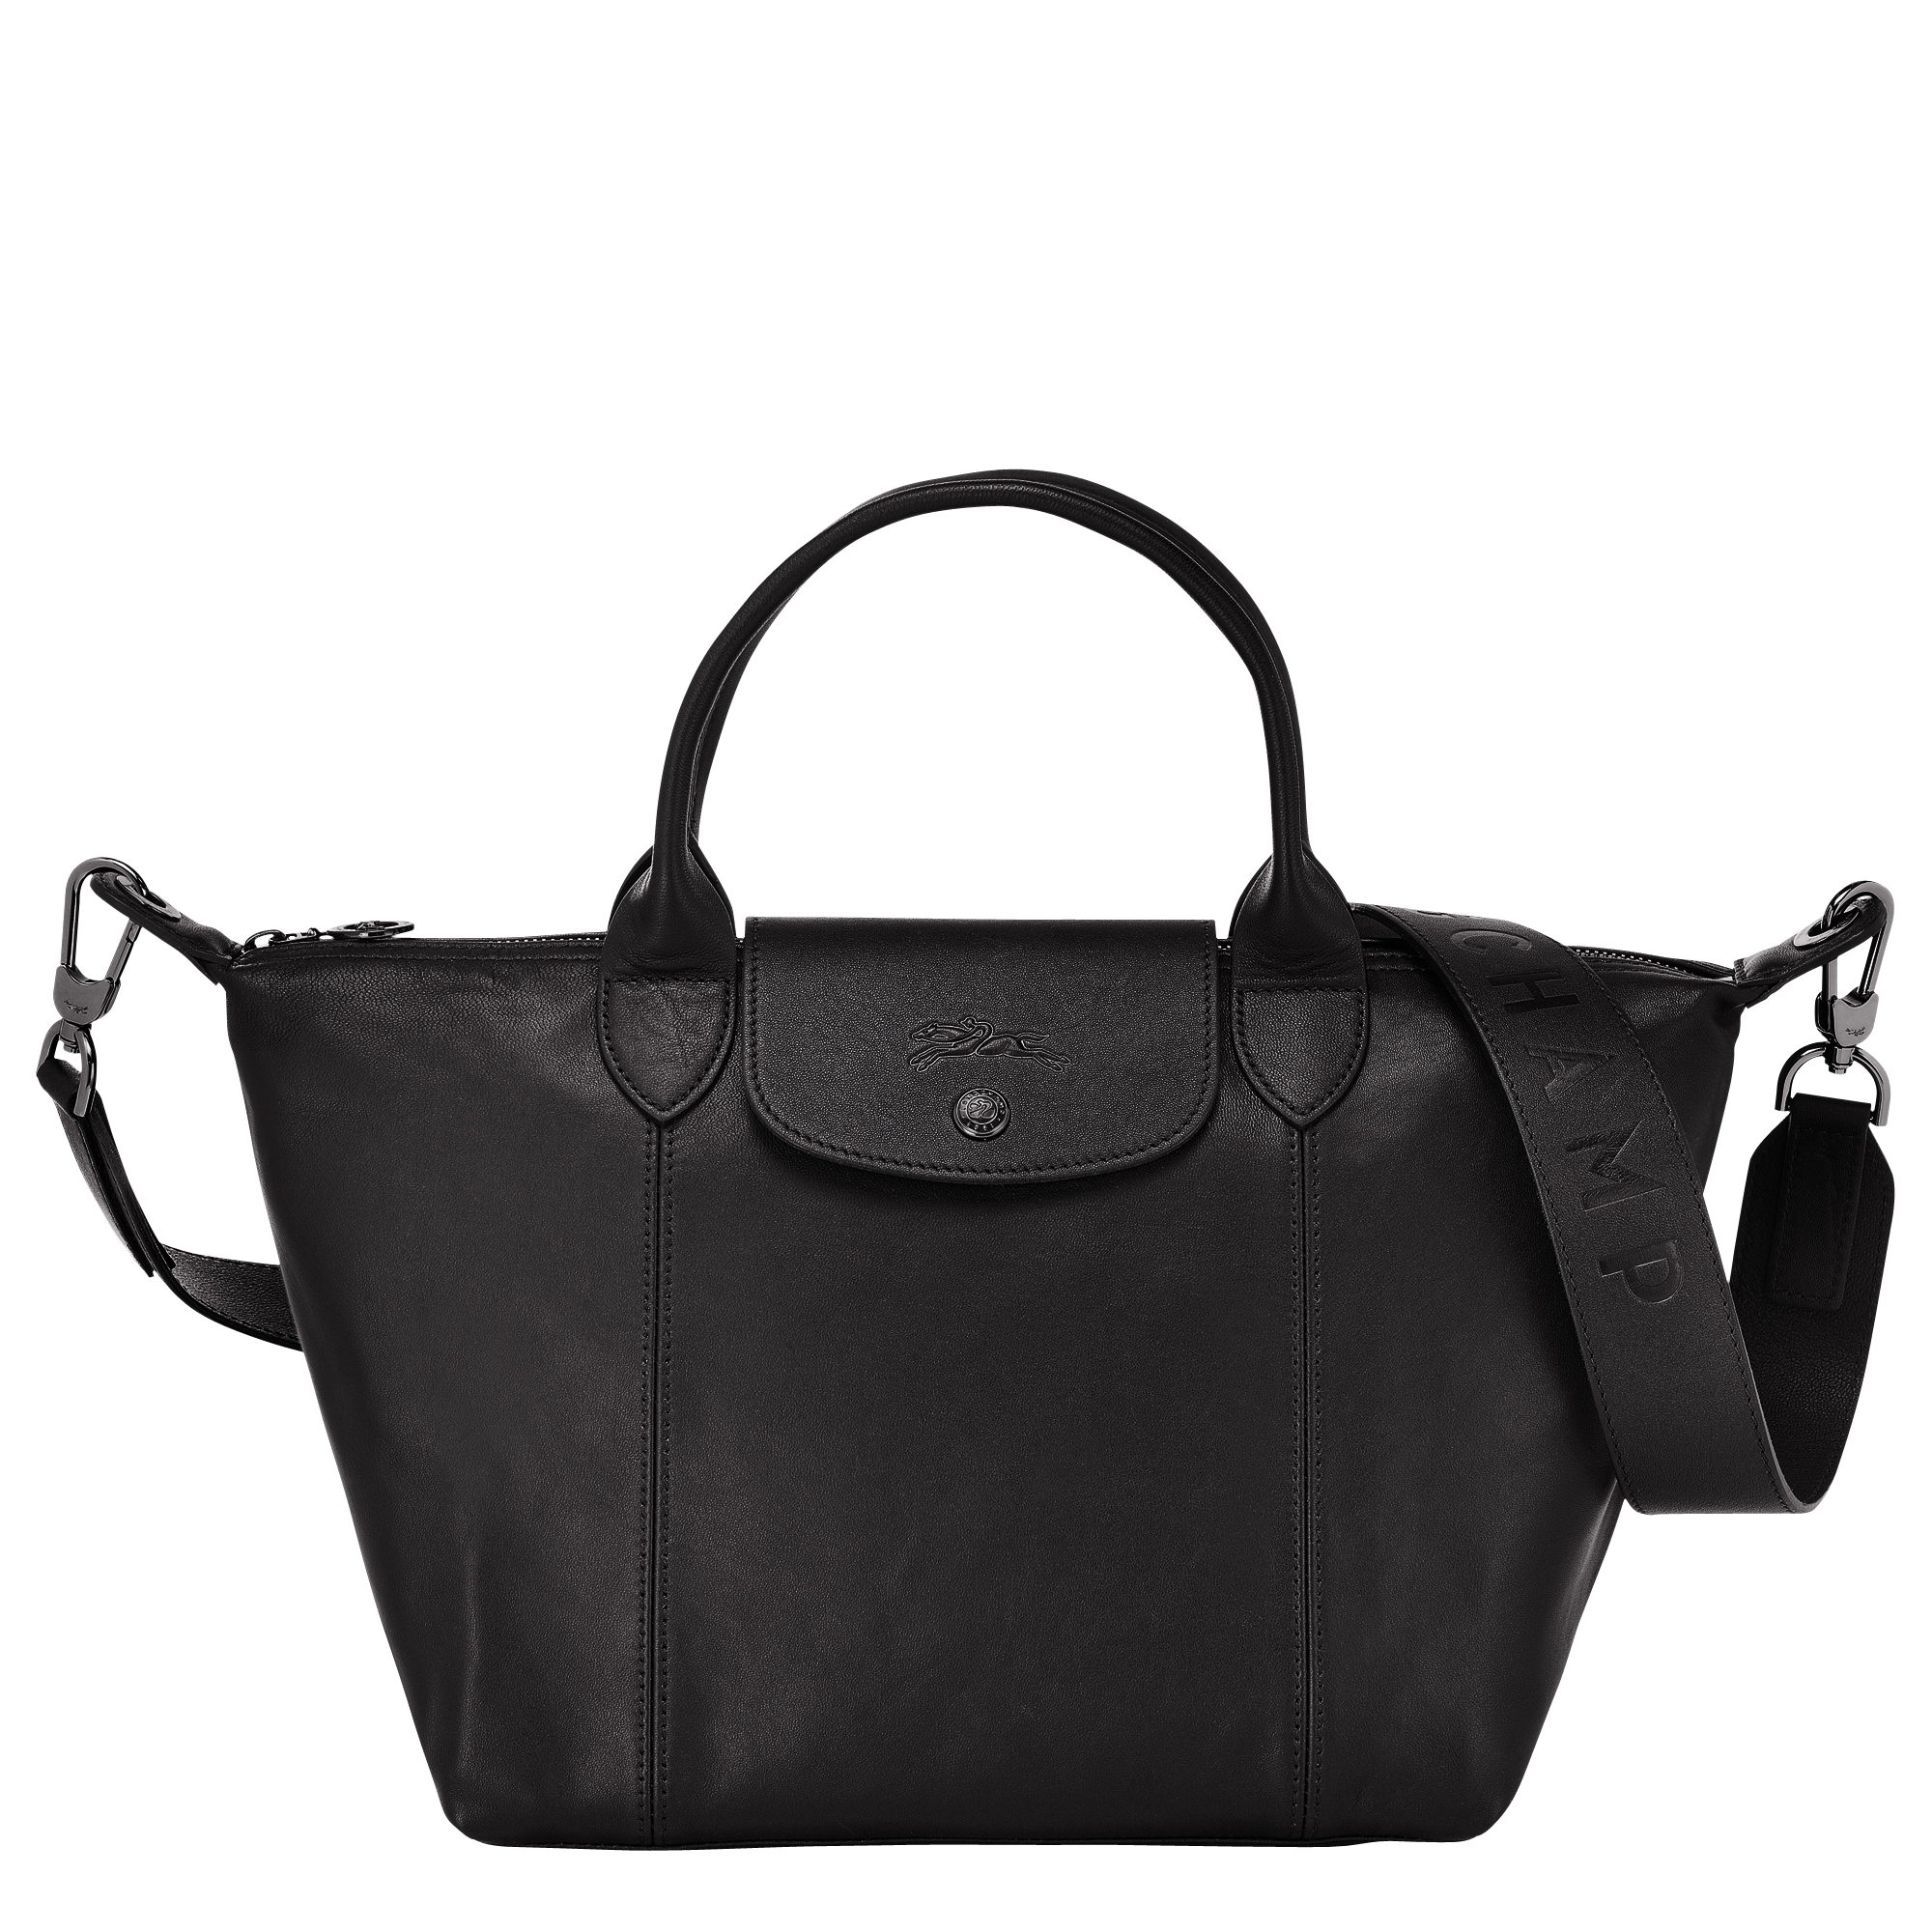 Top handle bag S Le Pliage Cuir Black 